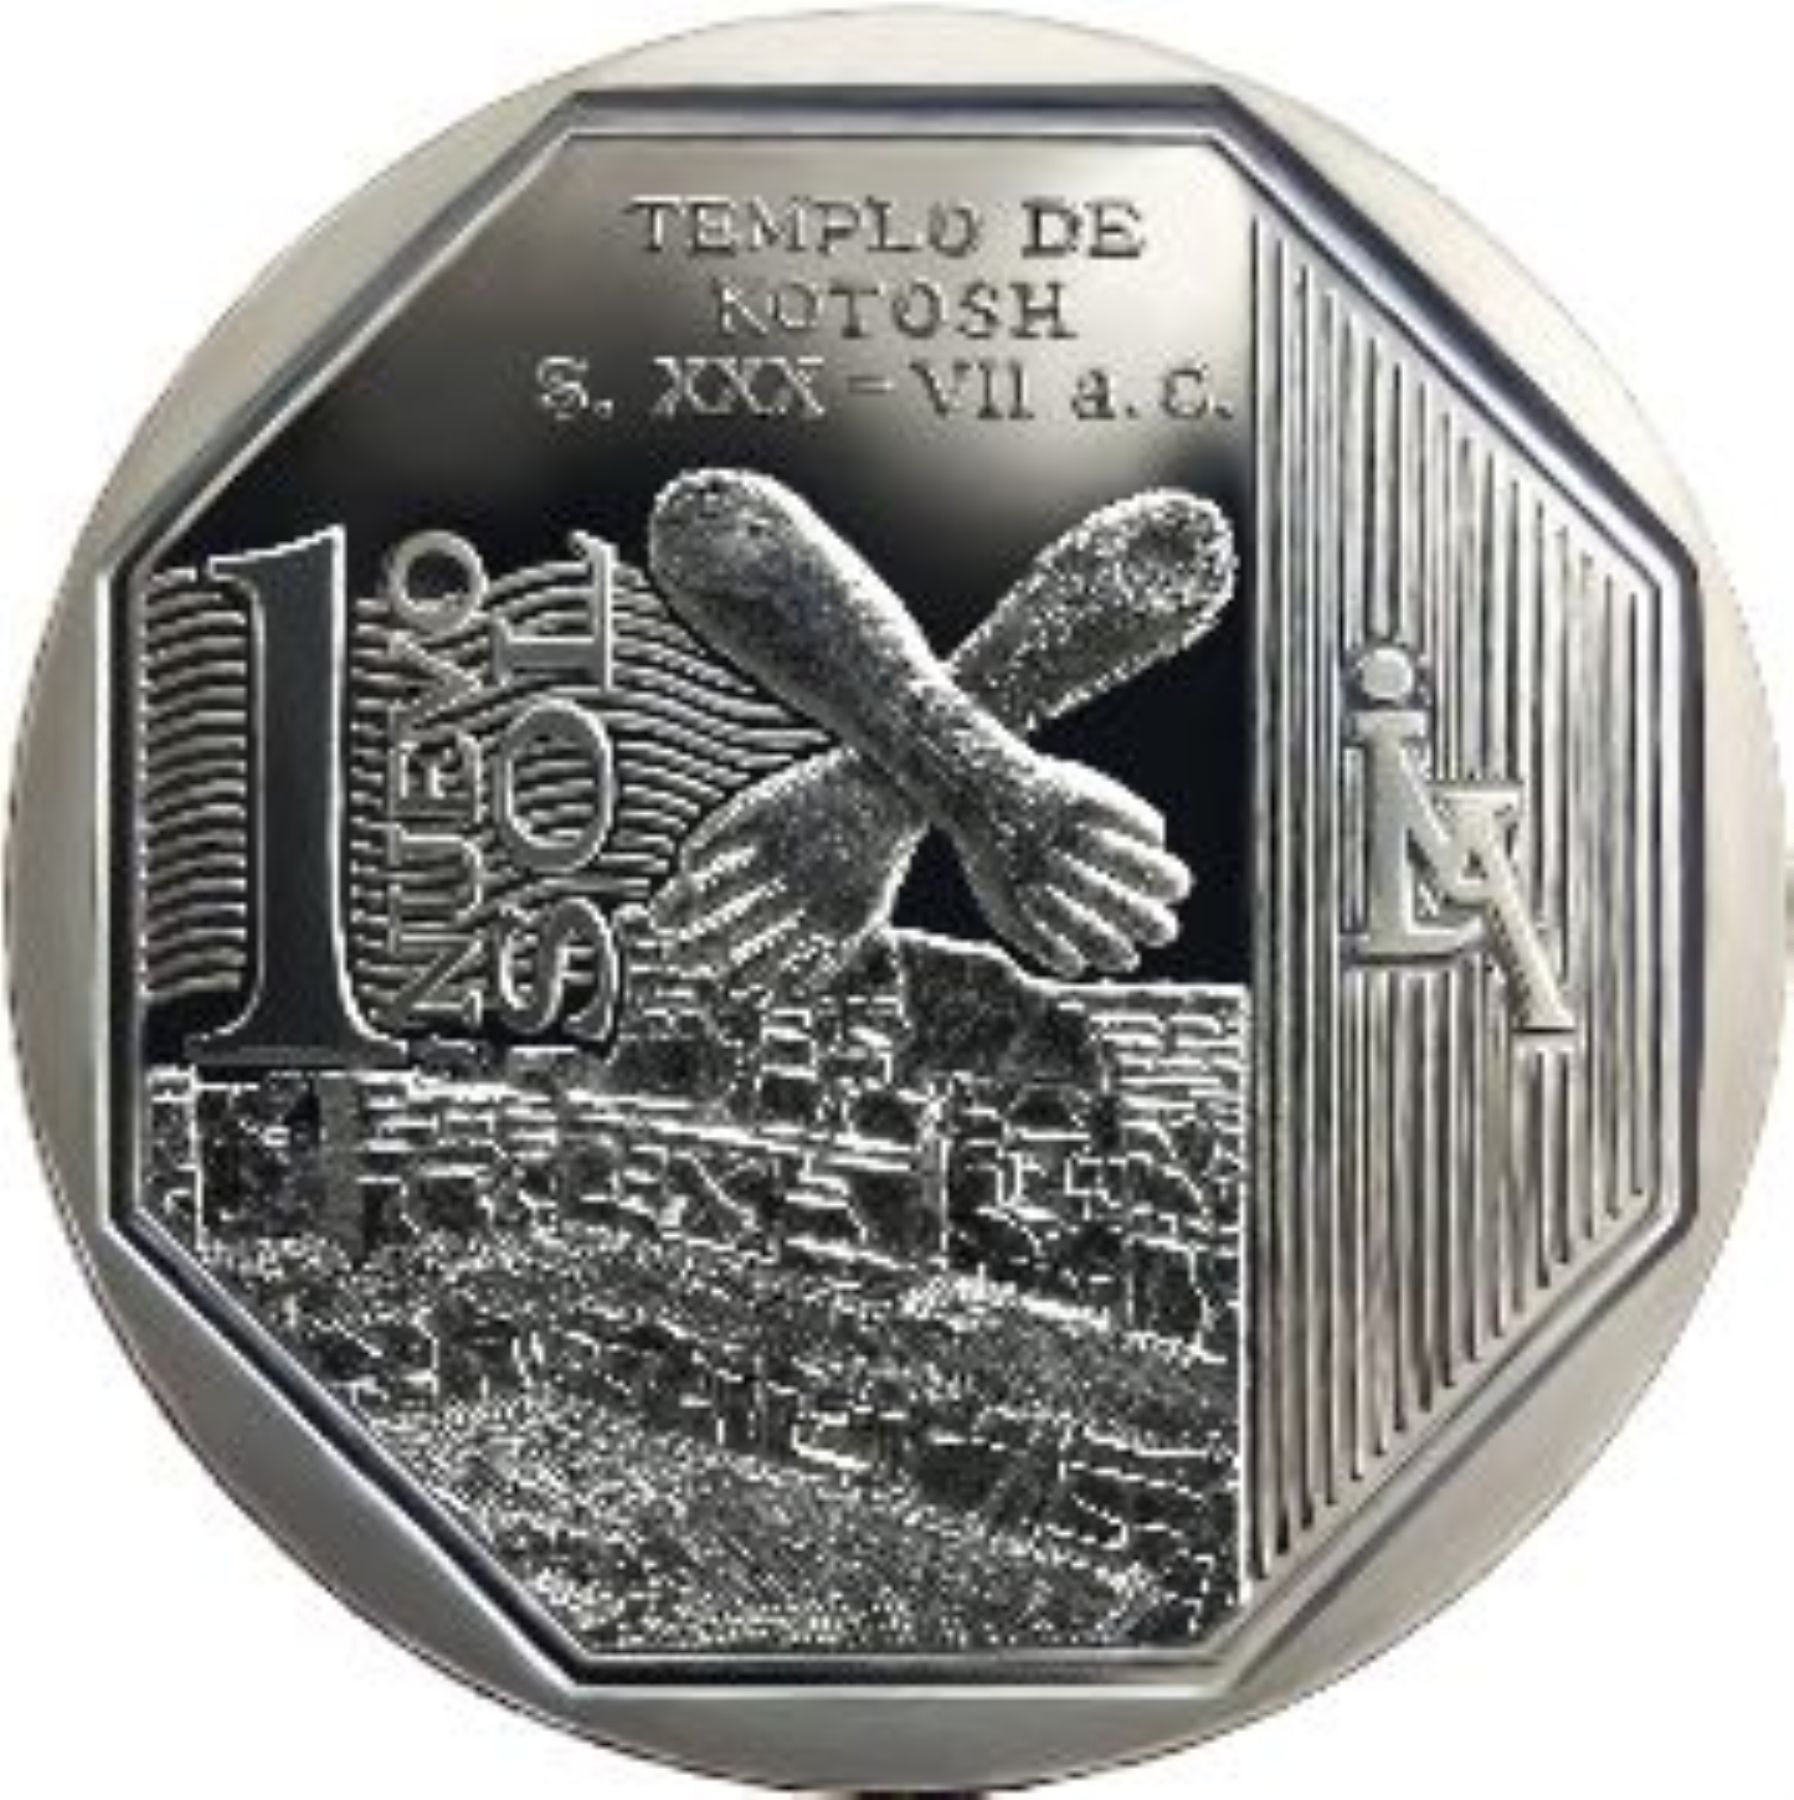 Moneda con imagen del templo de Kotosh entró en circulación hoy.